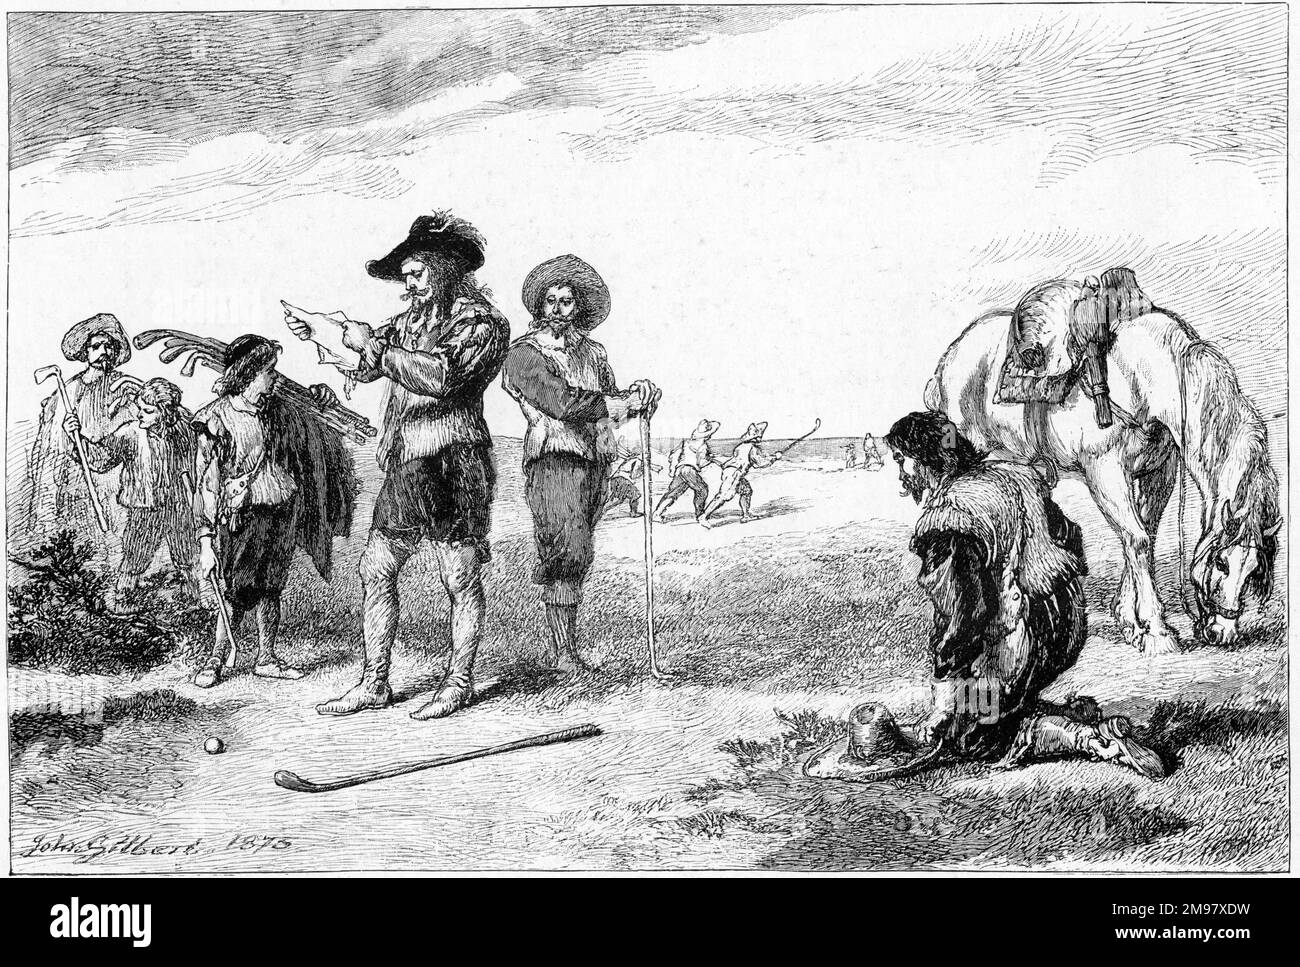 Le roi Charles Ier, jouant au golf à Leith, en Écosse, reçoit des nouvelles de la rébellion irlandaise qui a marqué le début des guerres des confédérés irlandais en octobre 1641. Apparemment, cela ne l'a pas empêché de terminer son tour. (L'histoire peut être une fabrication ultérieure.) Banque D'Images